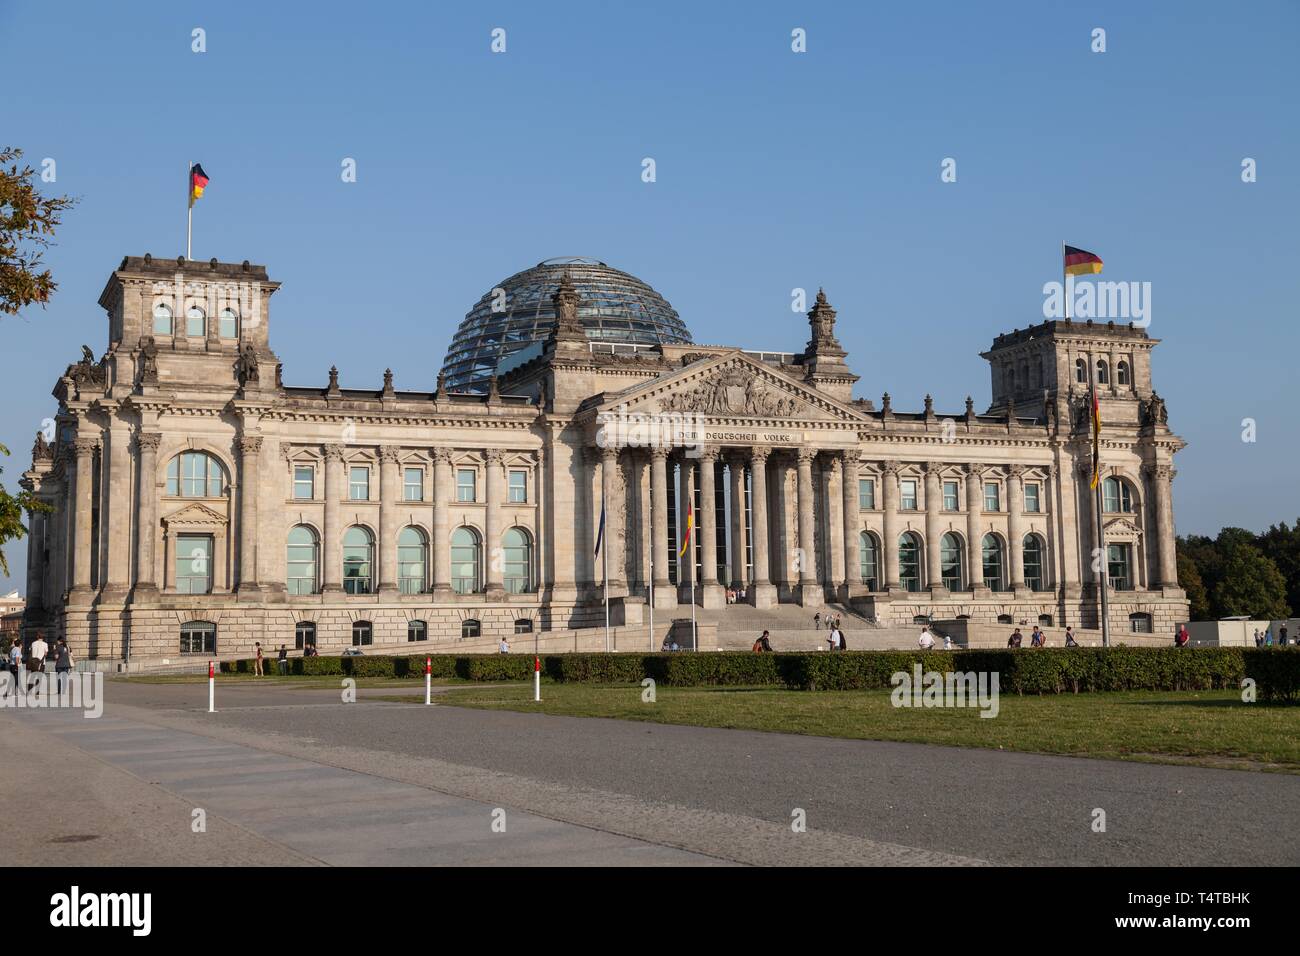 Le Parlement allemand, le Reichstag, quartier du gouvernement, Berlin, Germany, Europe Banque D'Images